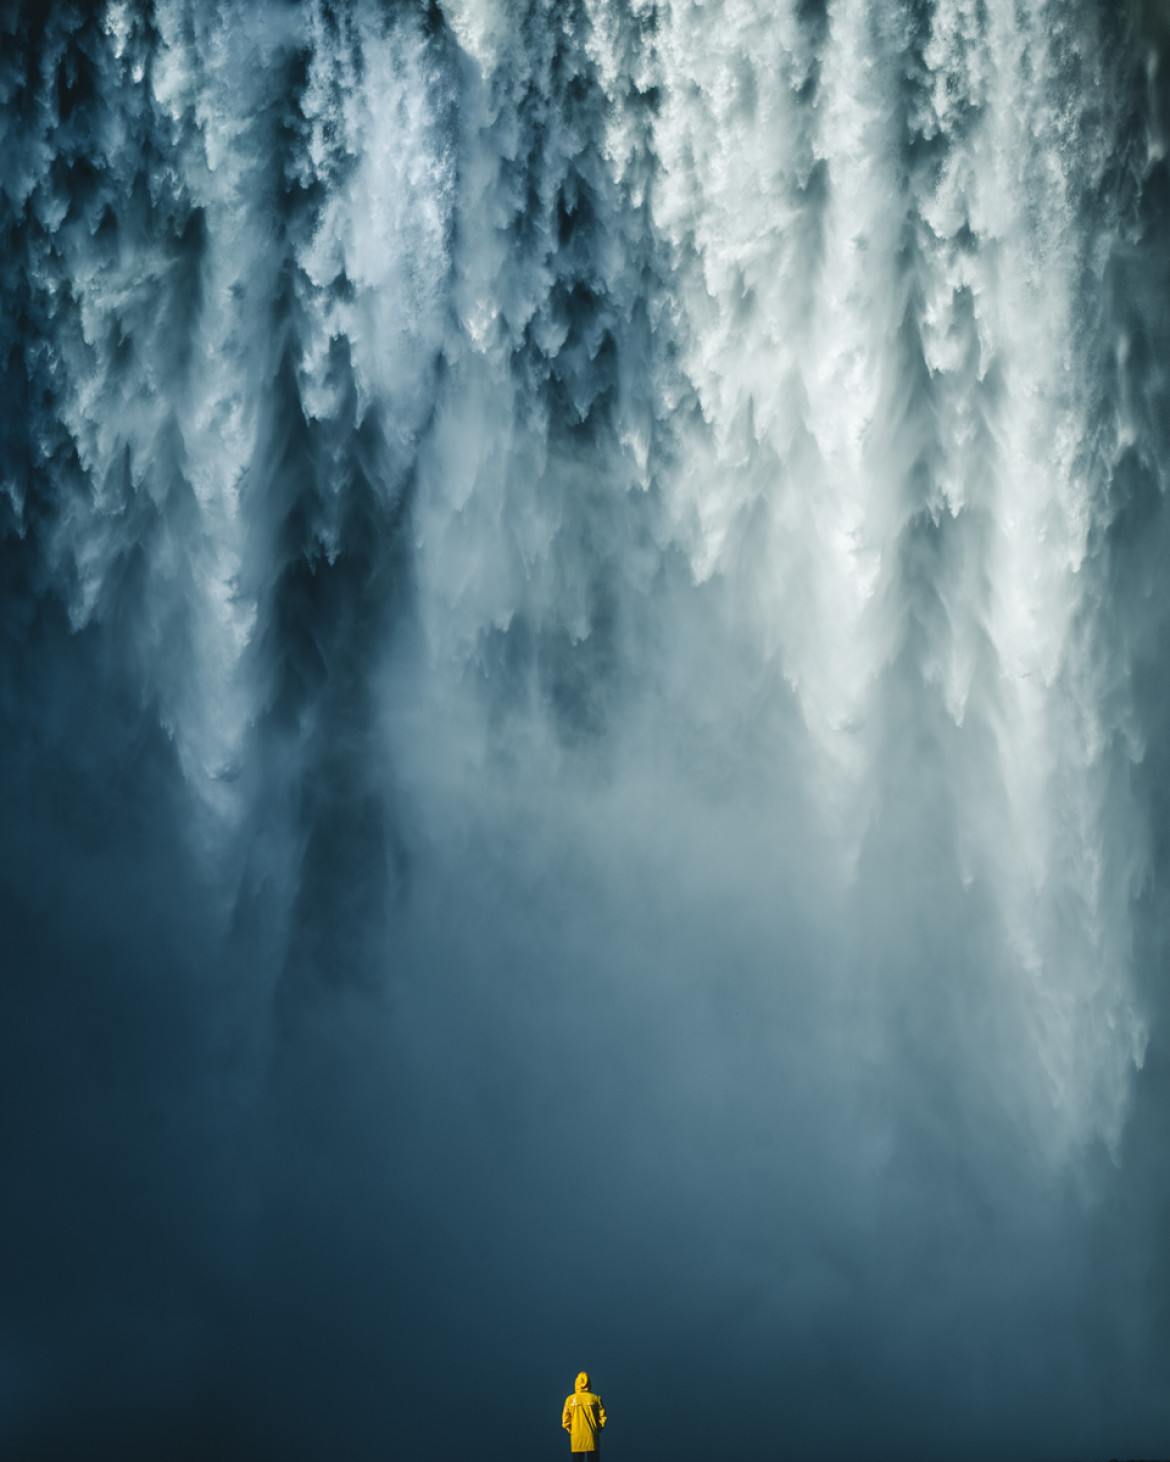 fot. Witold Ziomek, Waterfall, 1. miejsce w amatorskiej kategorii Nature